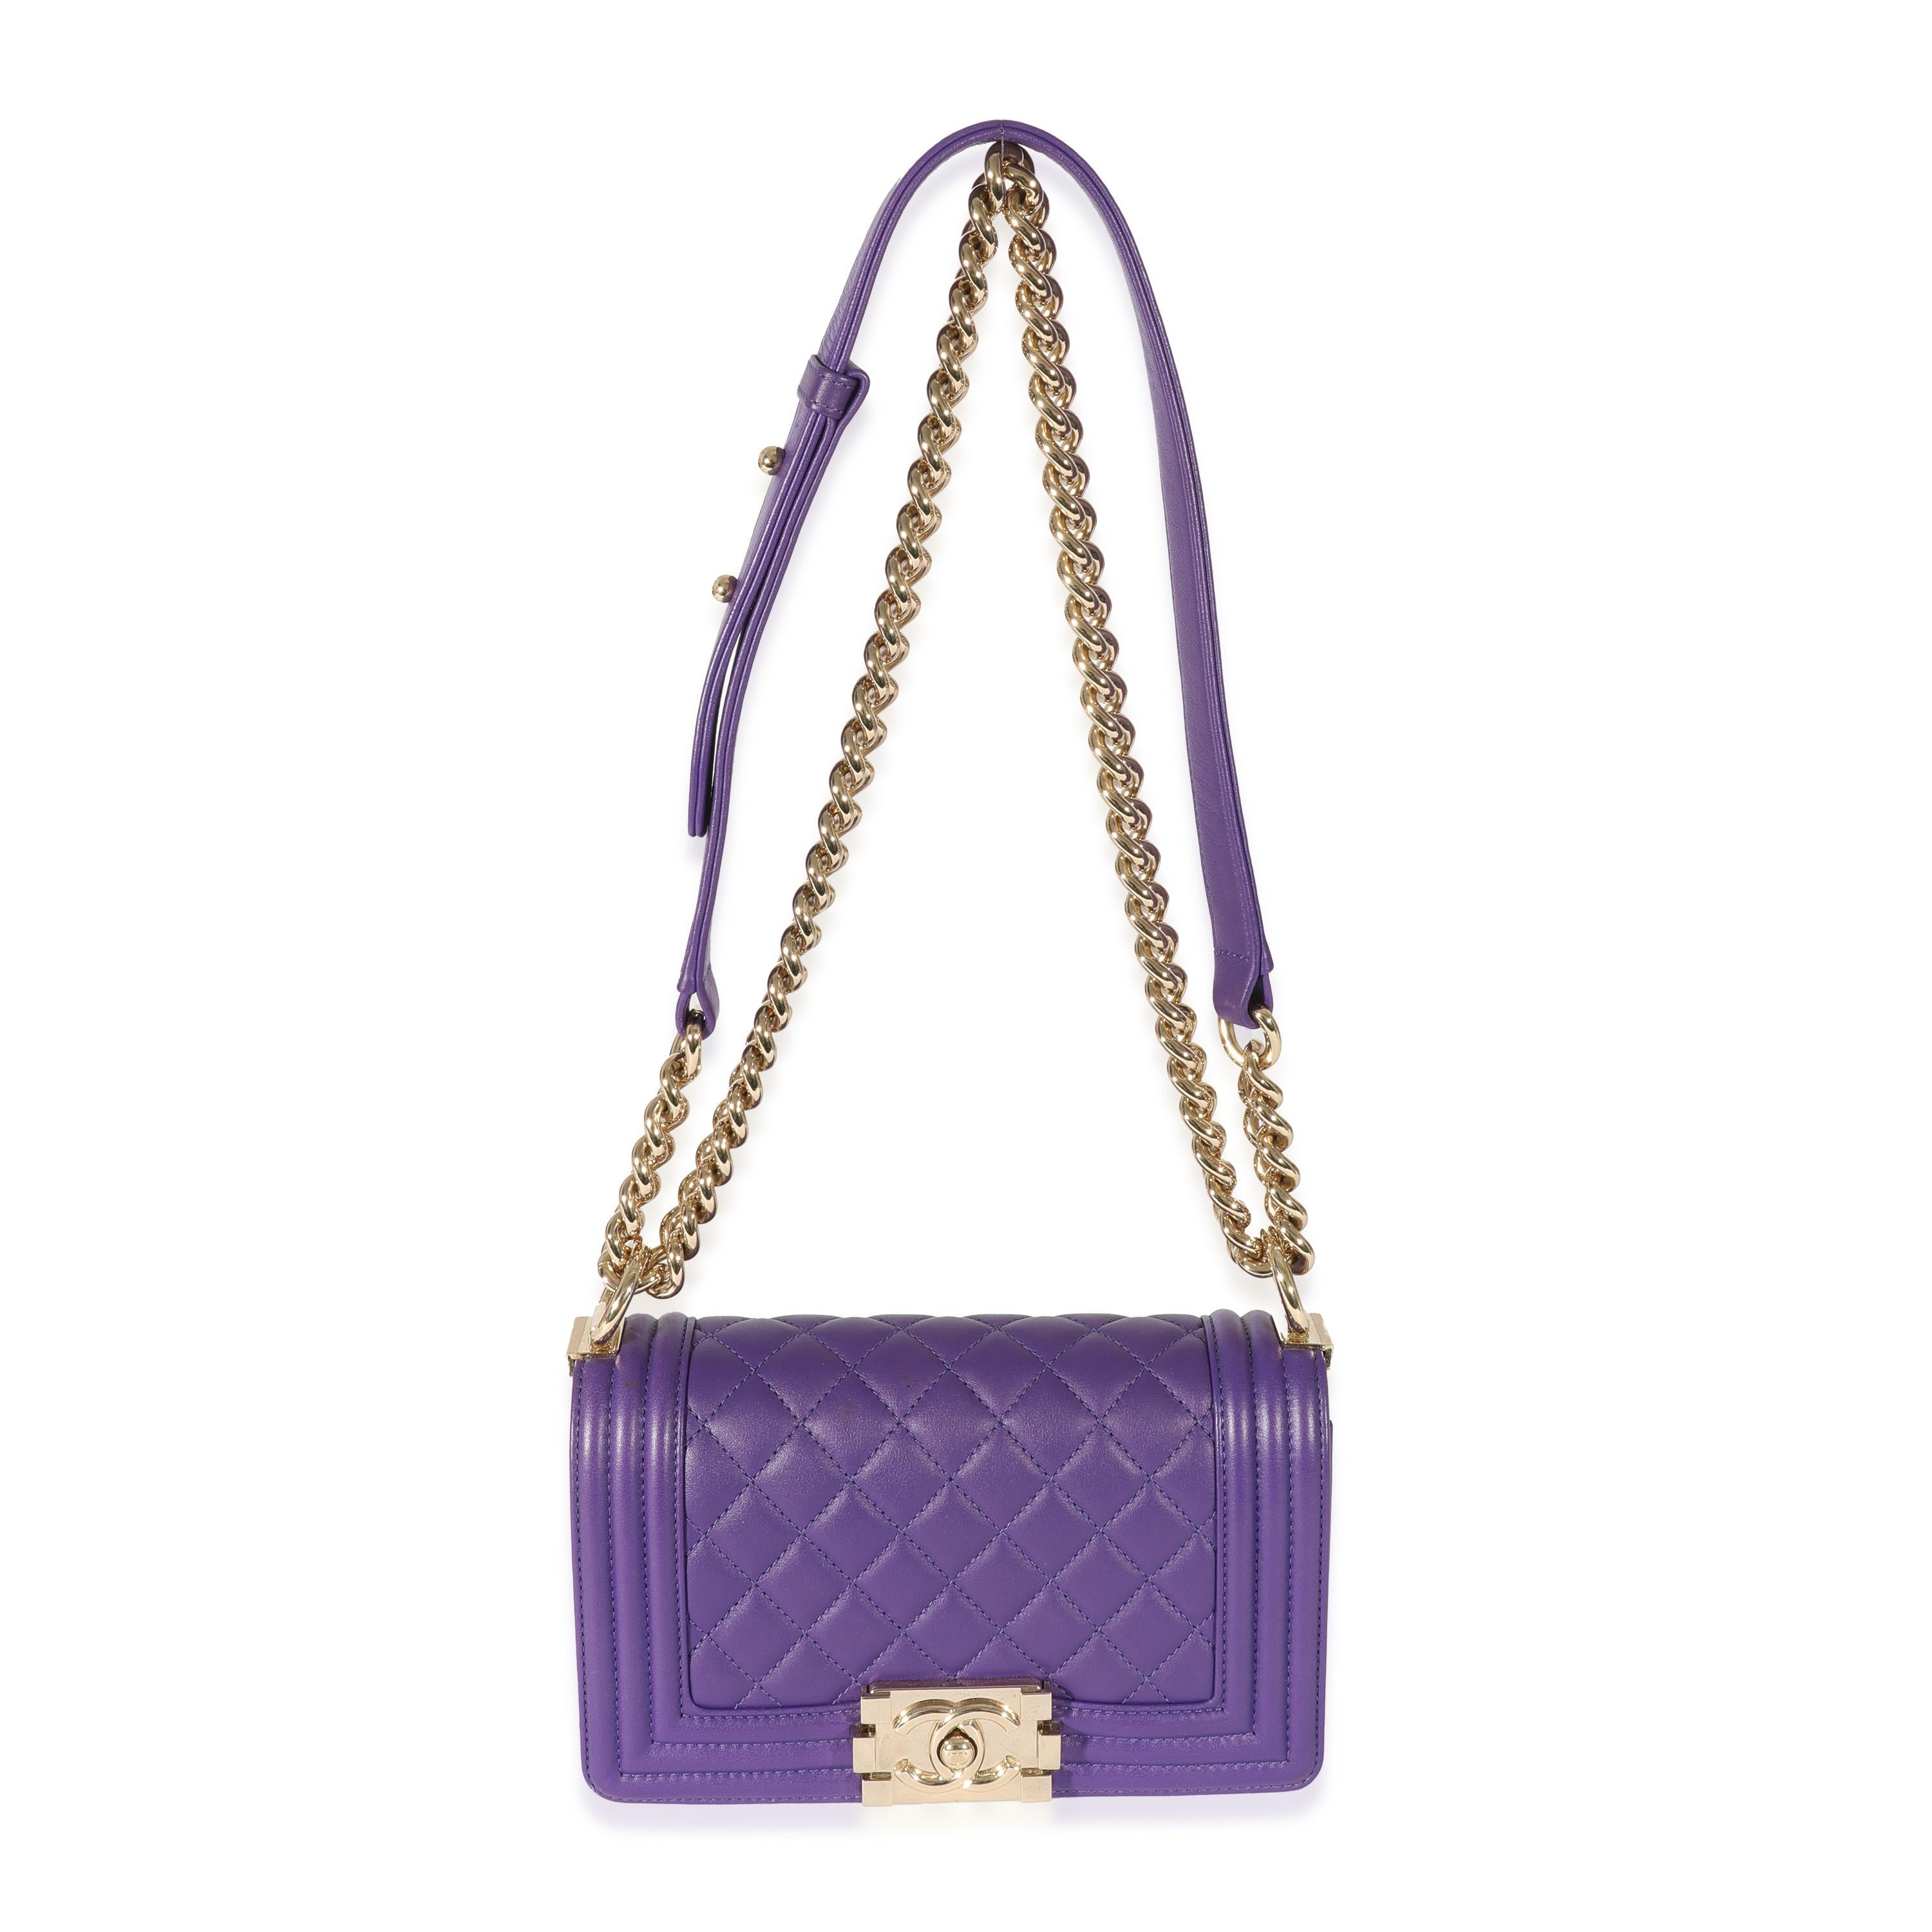 Women's or Men's Chanel Purple Lambskin Small Boy Bag